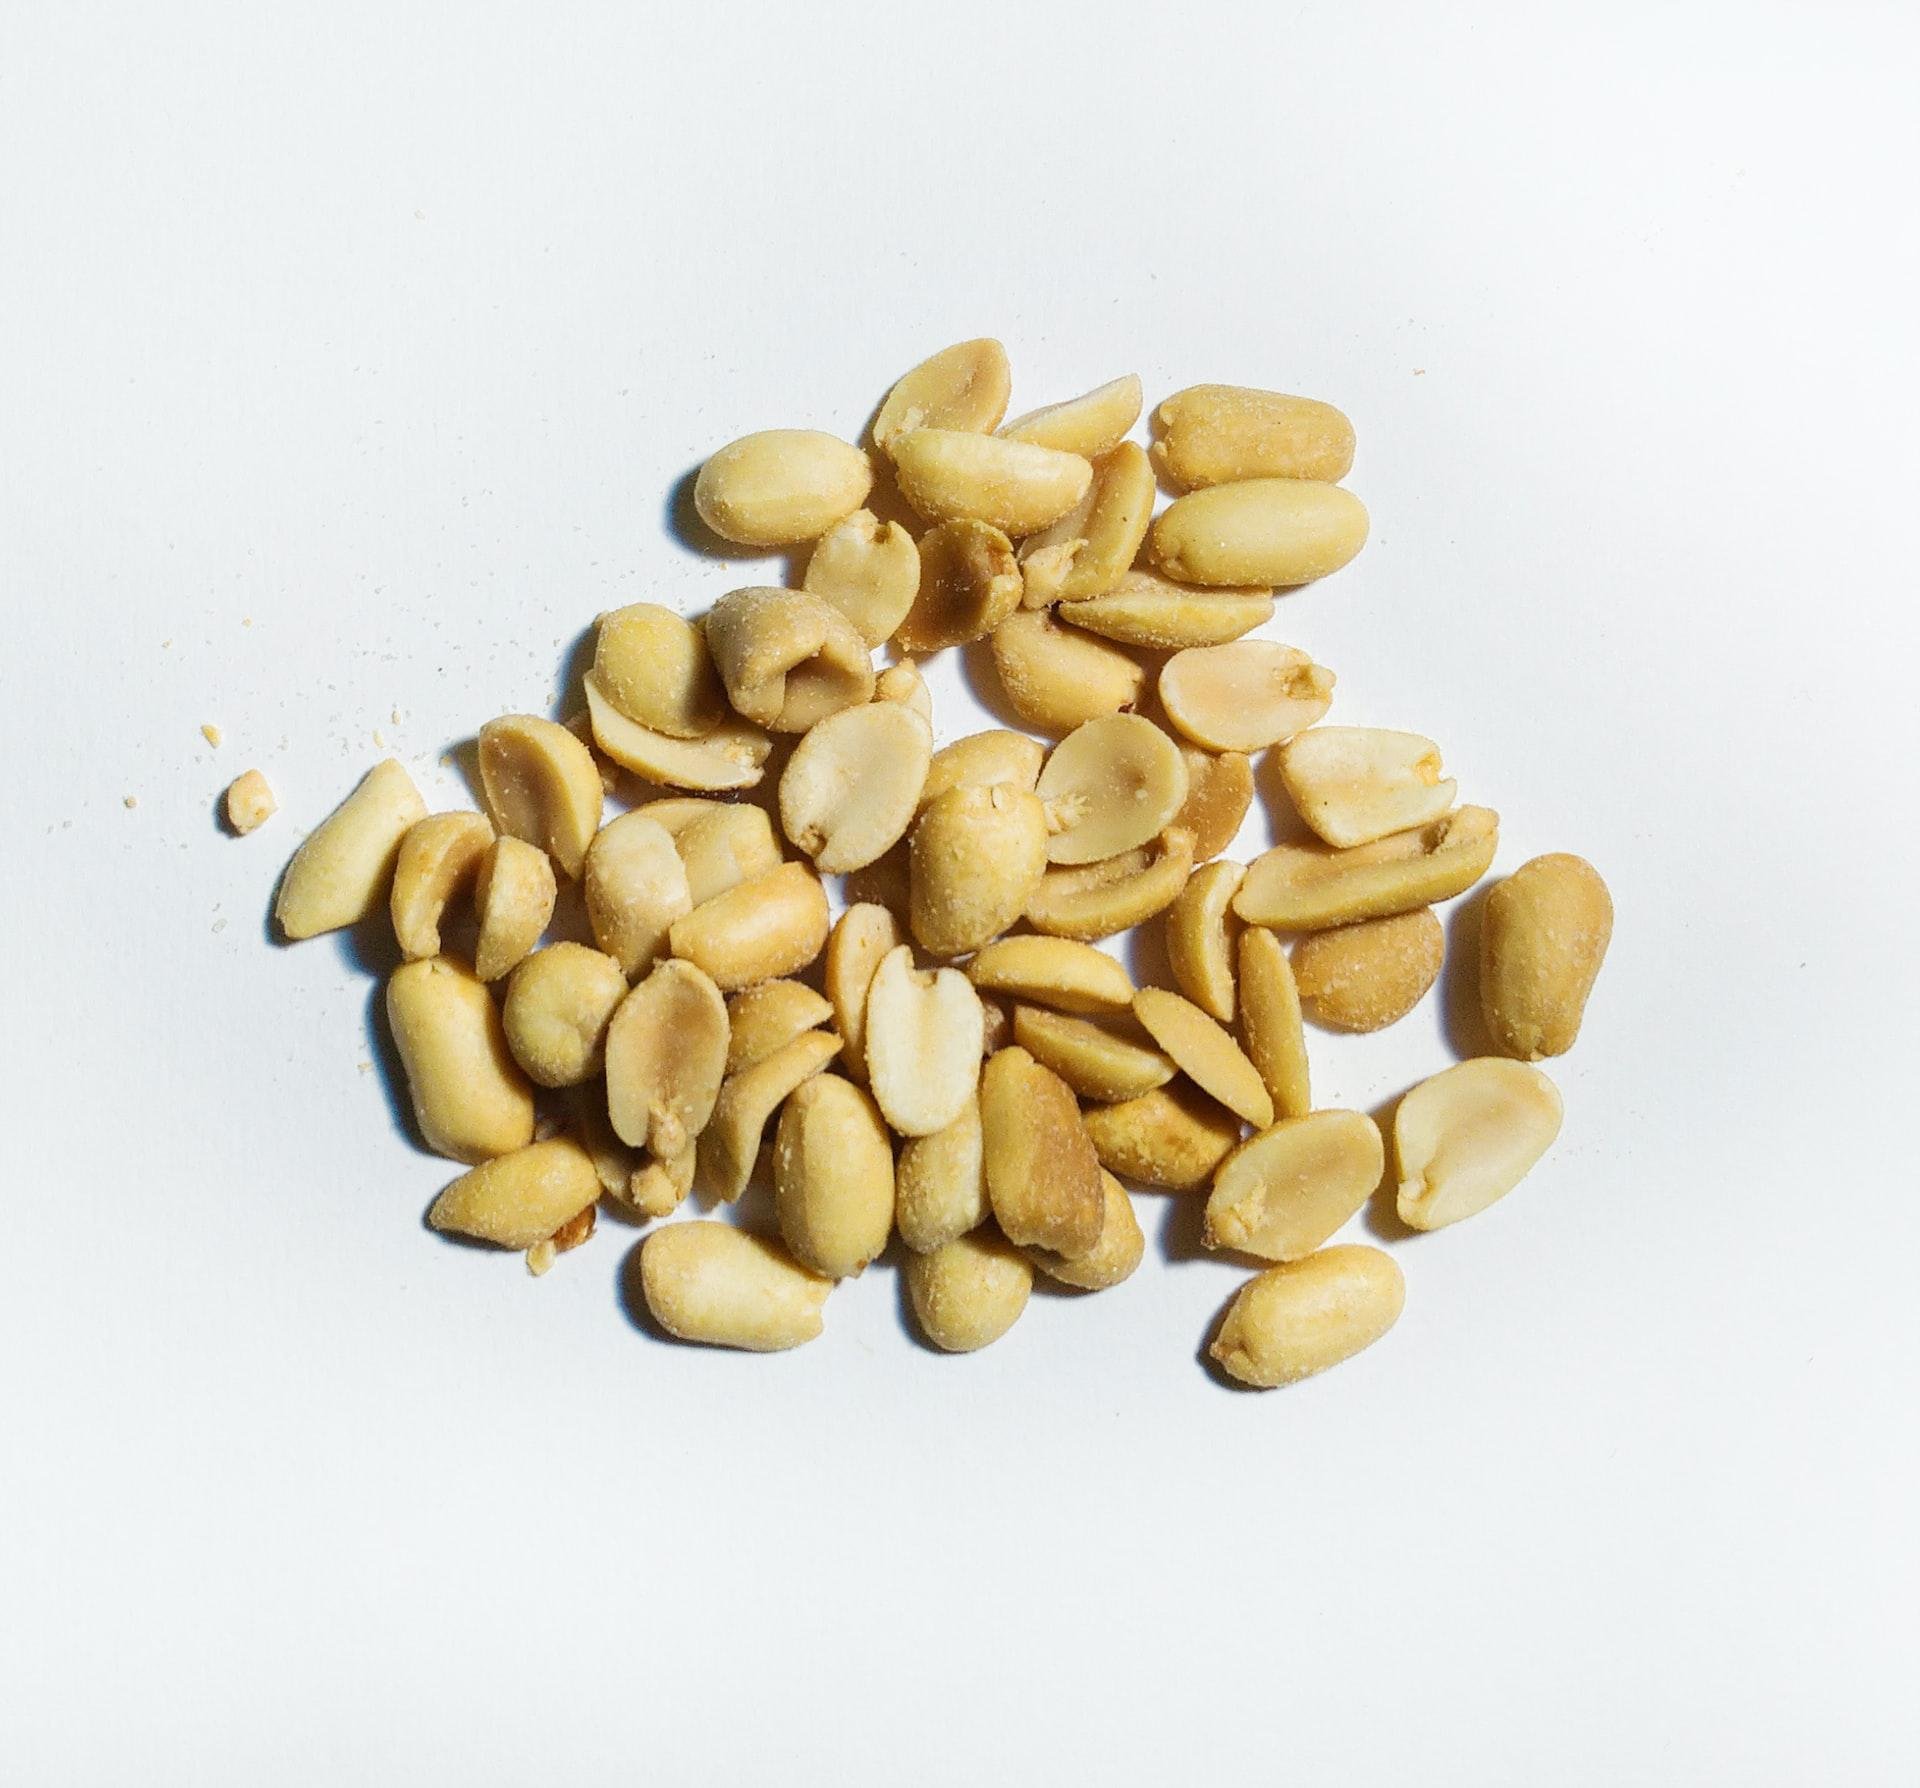 Amendoim é um alimento rico em gorduras saudáveis. (Fonte: Unsplash)